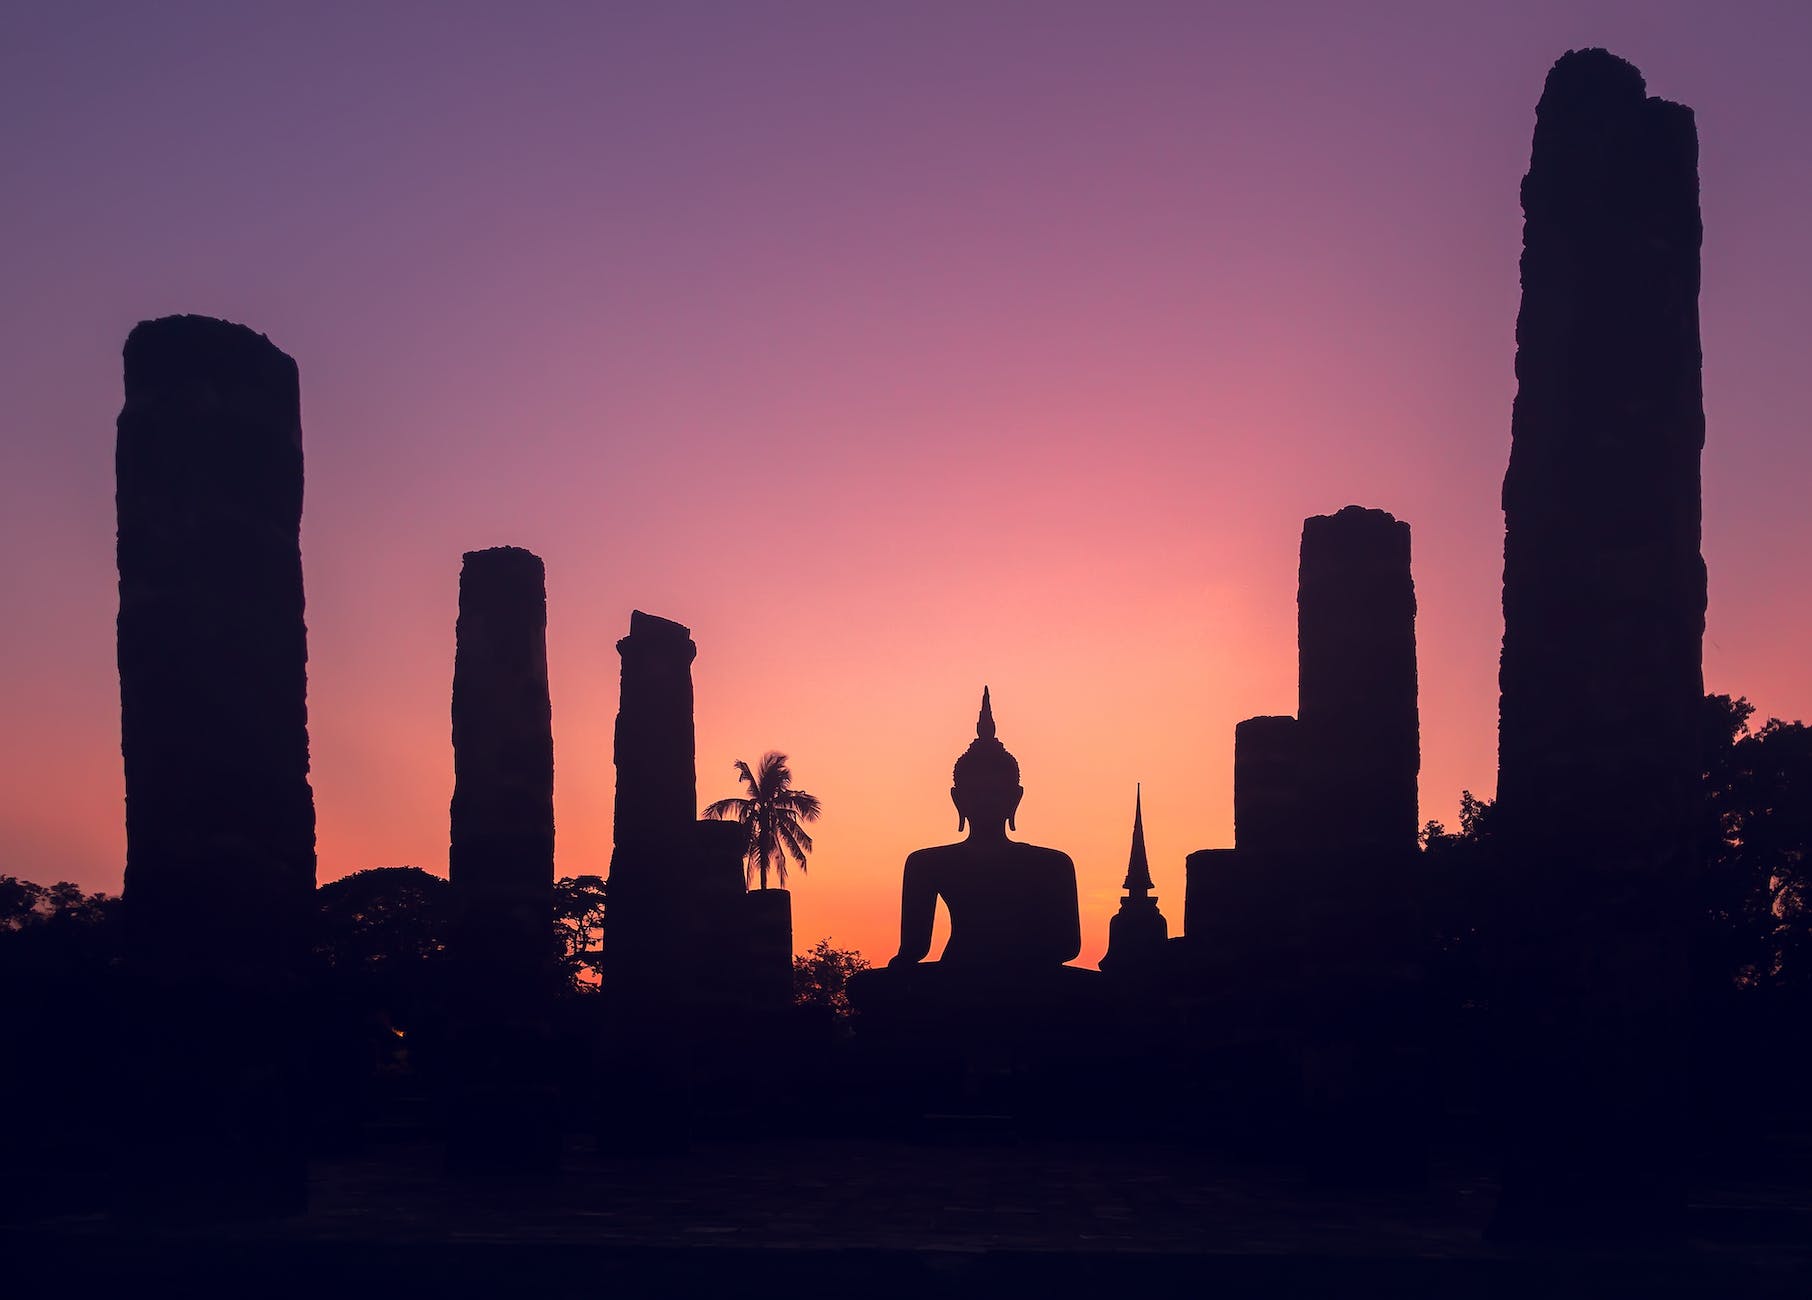 majestic sunset sky over big buddha statue